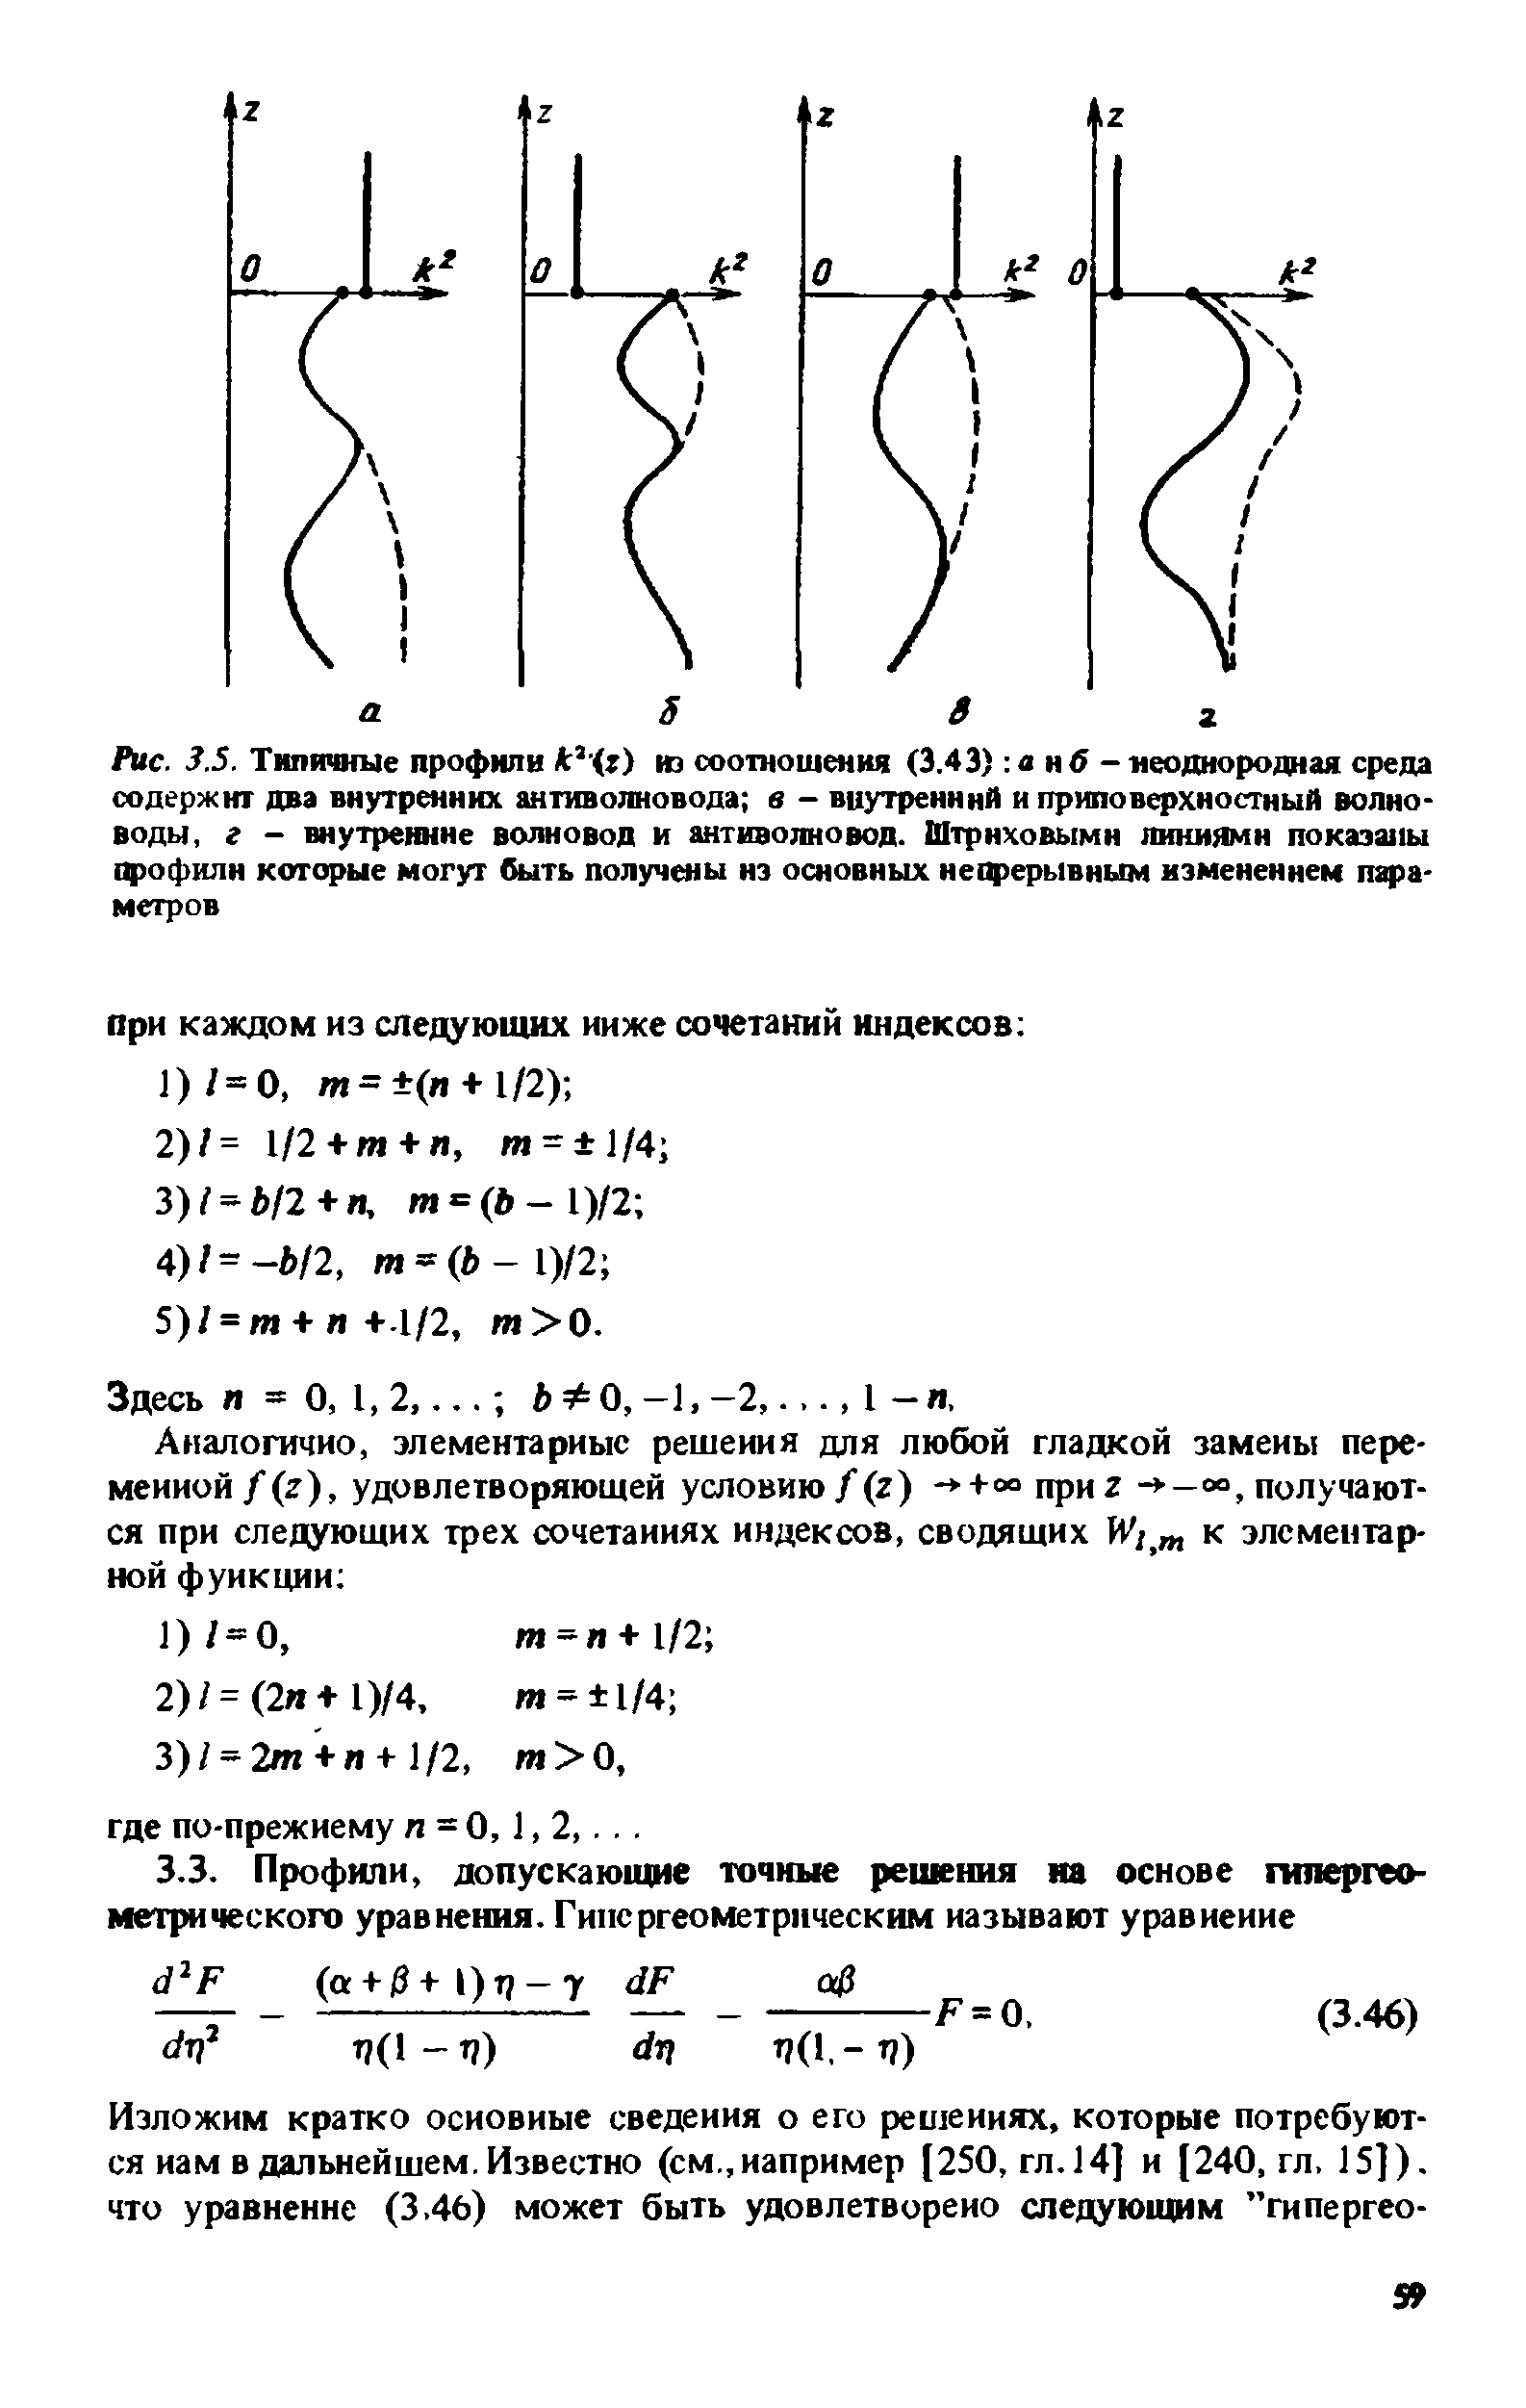 Рис. 3.5. Типичные профили к г) иэ соотношения (3.43) а нб - <a href="/info/146375">неоднородная среда</a> содержит два внутренних антиволновода в - вцутренннй и приповерхностный волноводы, г - внутренние волновод и антиволновод. <a href="/info/1024">Штриховыми линиями</a> показаны профили которые могут быть получены иэ основных непрерывным изменением параметров
